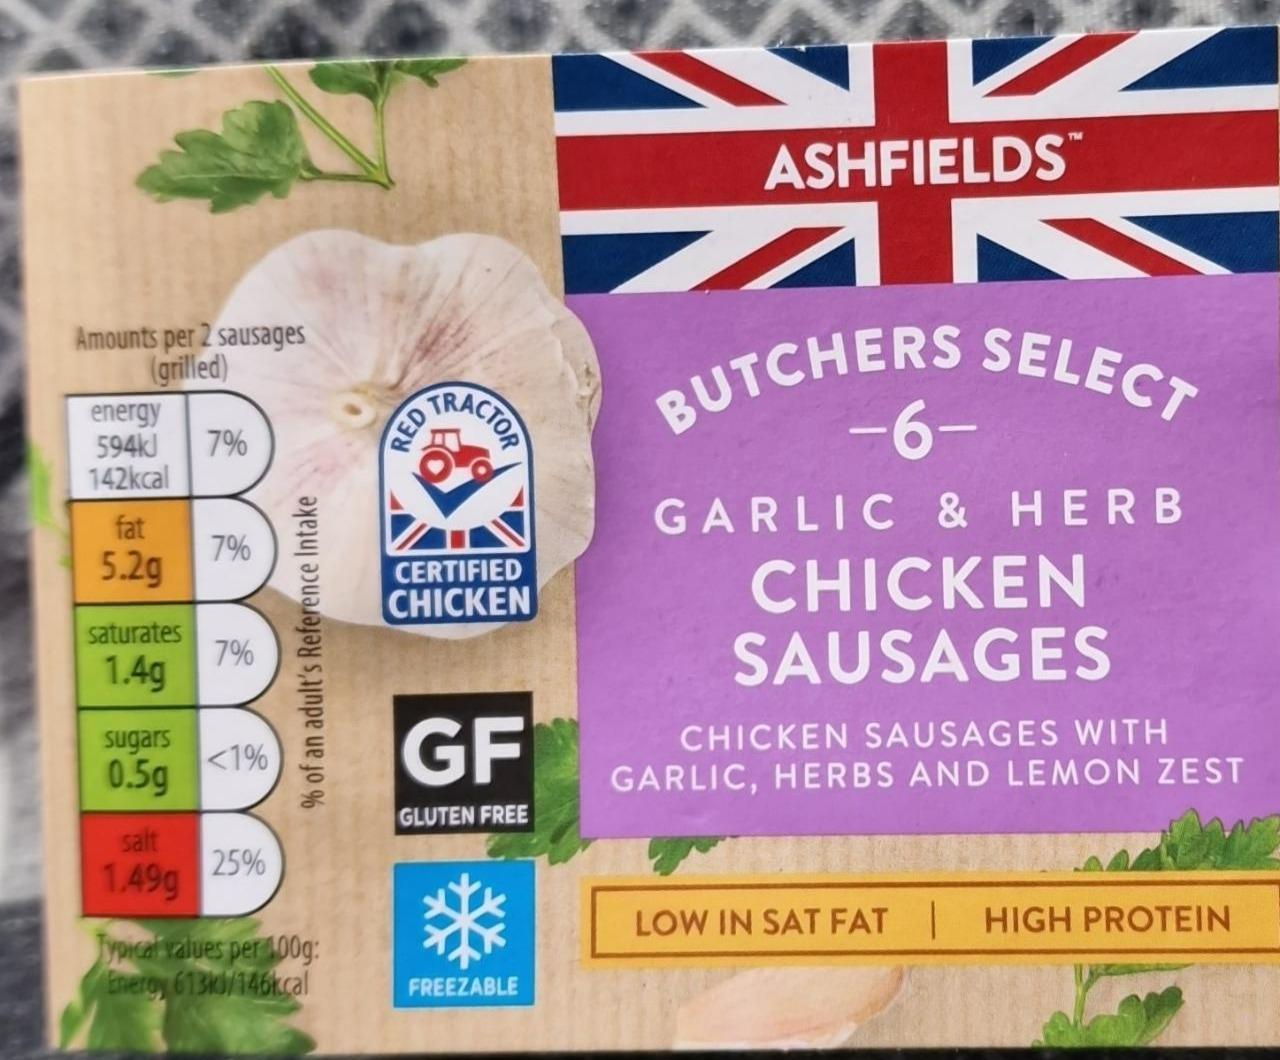 Fotografie - Butchers select Garlic & Herb Chicken sausages Ashfields